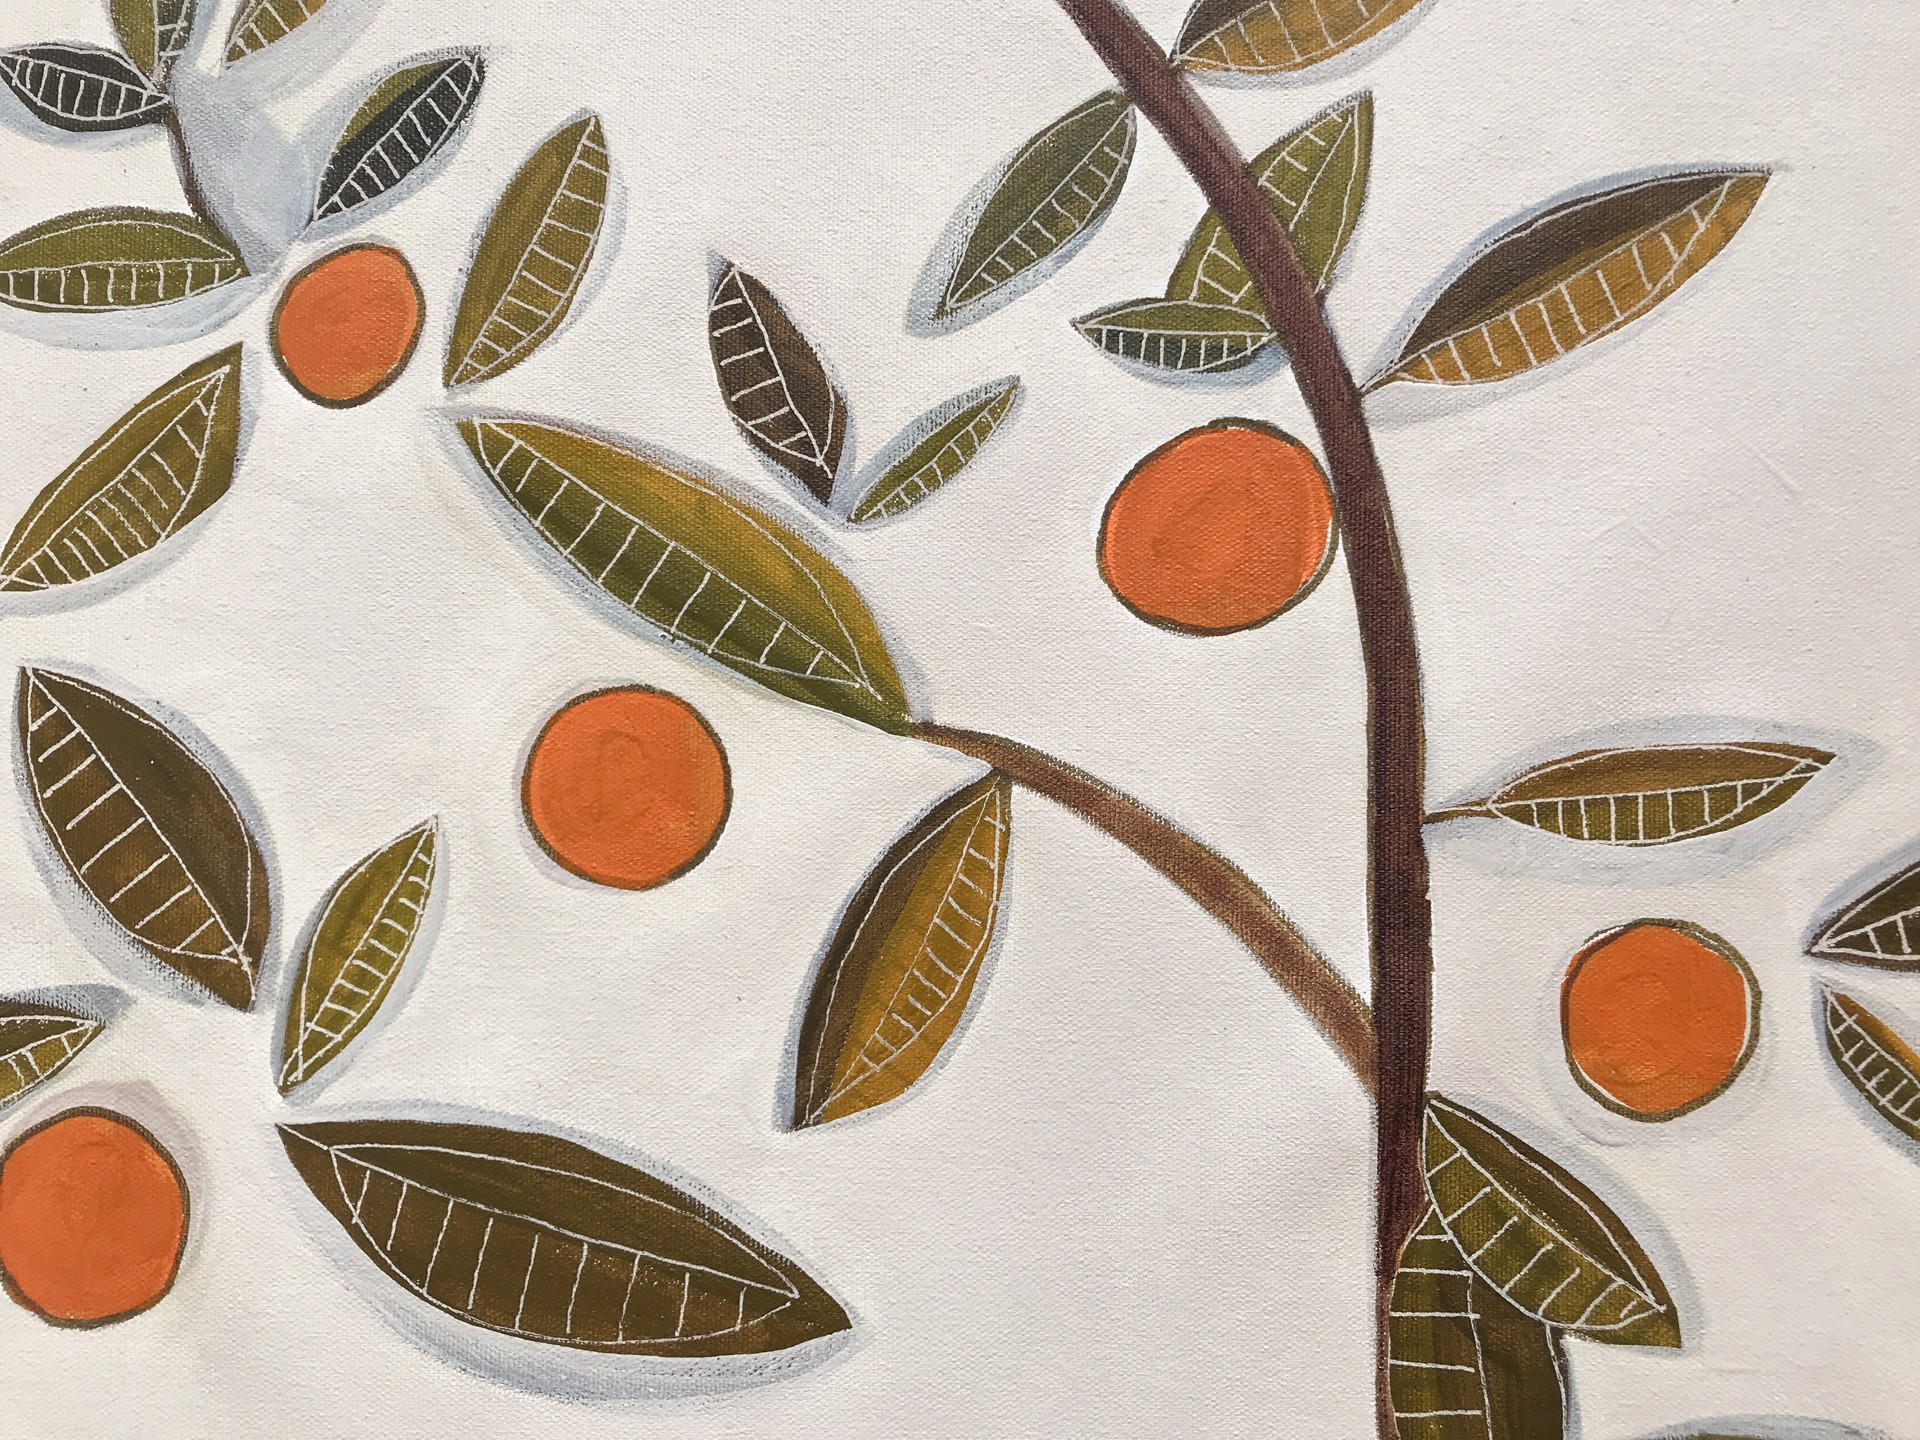 Mandarin Tree and Plate of Oranges by Rachael Van Dyke